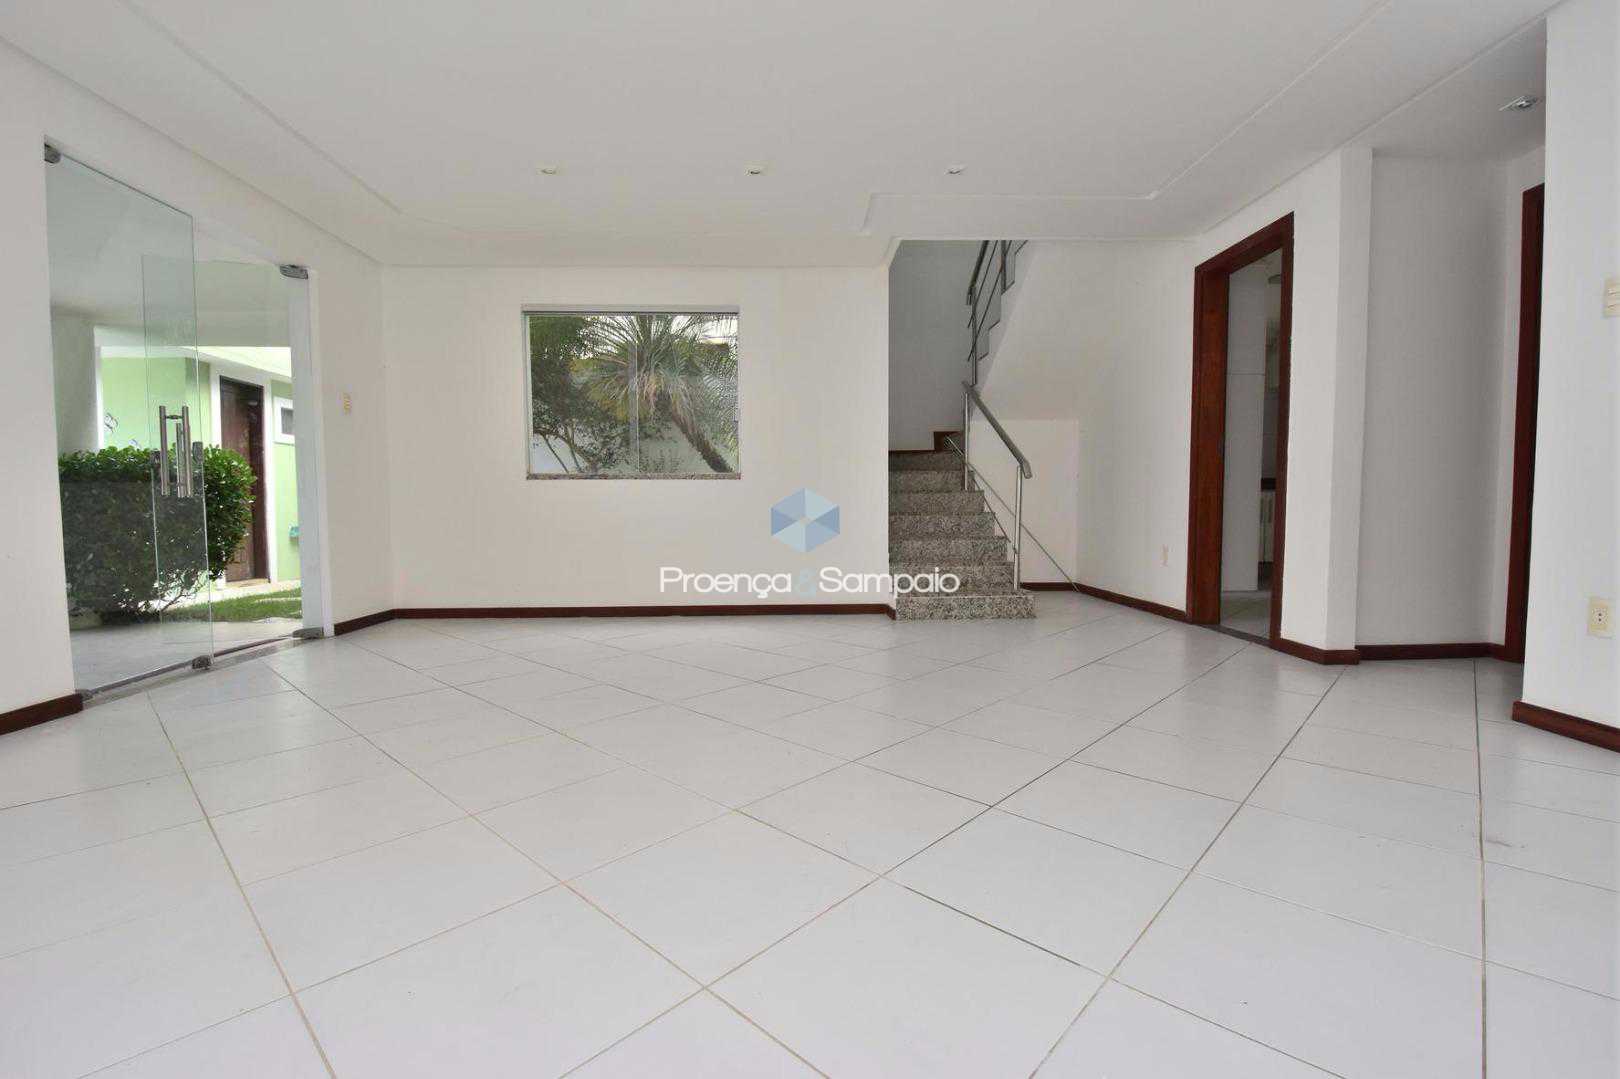 FOTO10 - Casa em Condomínio 4 quartos à venda Lauro de Freitas,BA - R$ 680.000 - PSCN40012 - 12